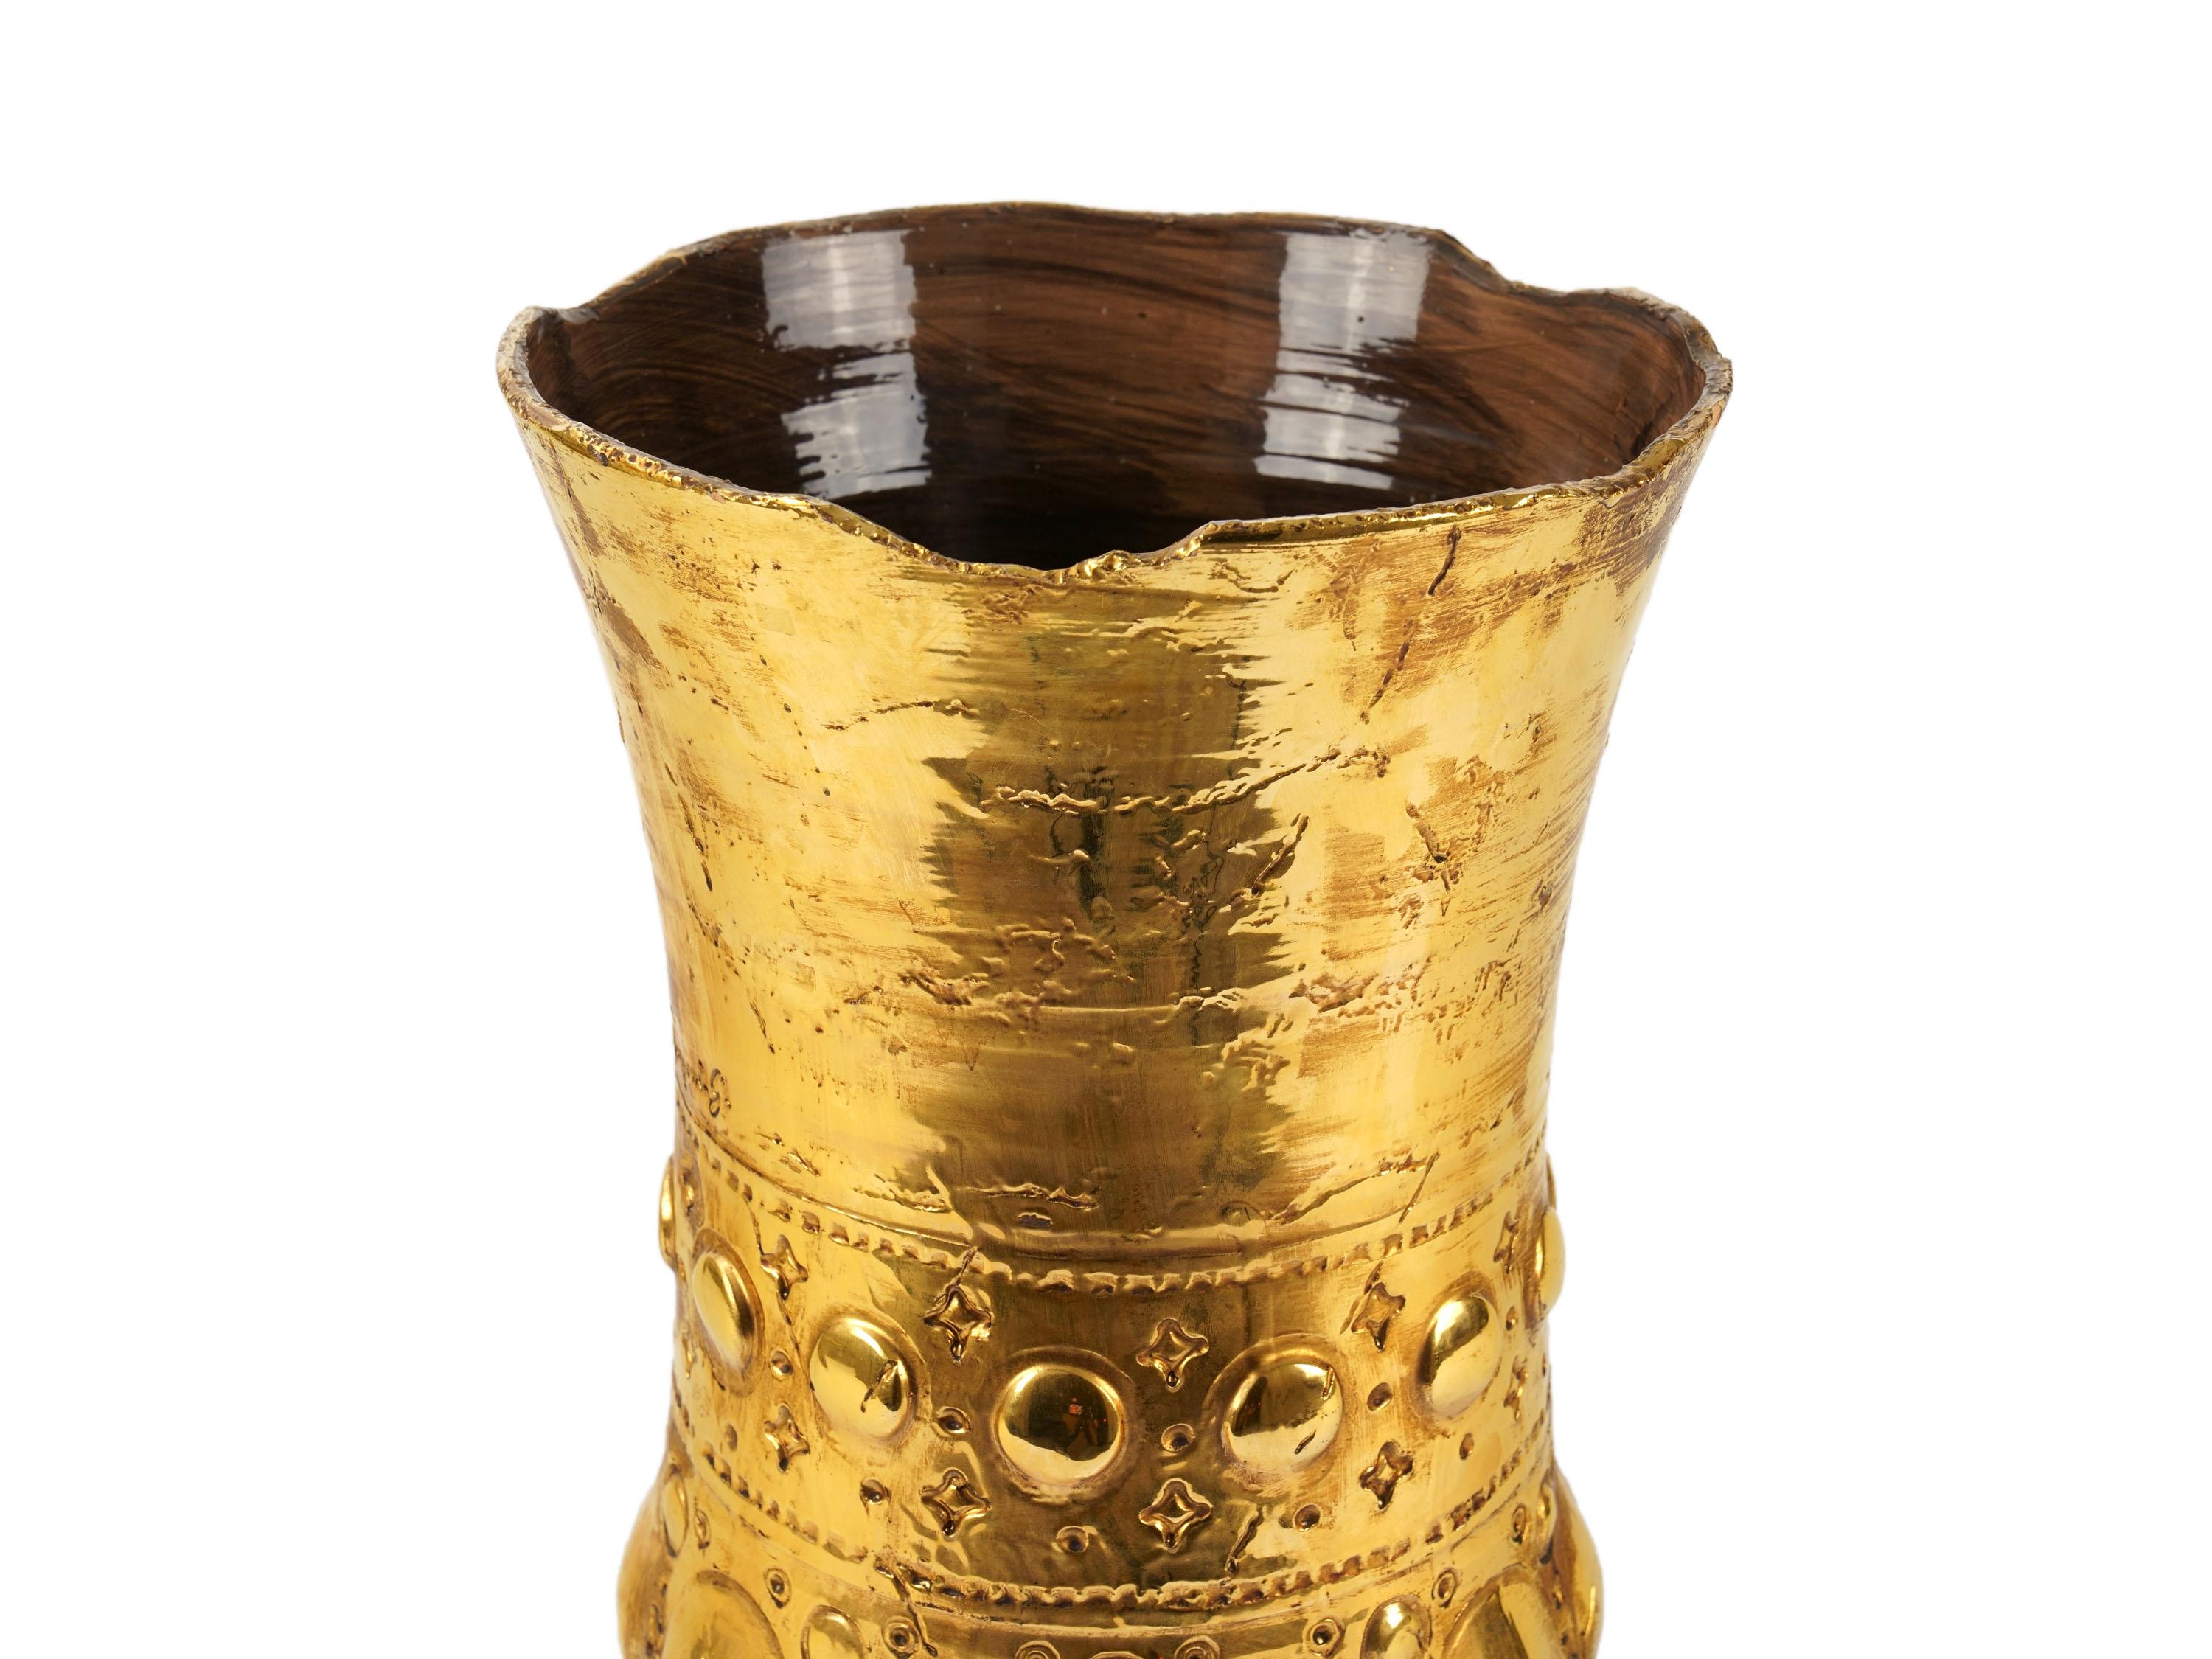 Vase sculptural fabriqué à la main en Italie et décoré avec la technique du lustre en or 24 Kt. Dimensions : D 29 cm, H 46 cm. L'ensemble du processus de fabrication est réalisé à la main en Italie.
Le vase s'inspire de l'un des produits les plus